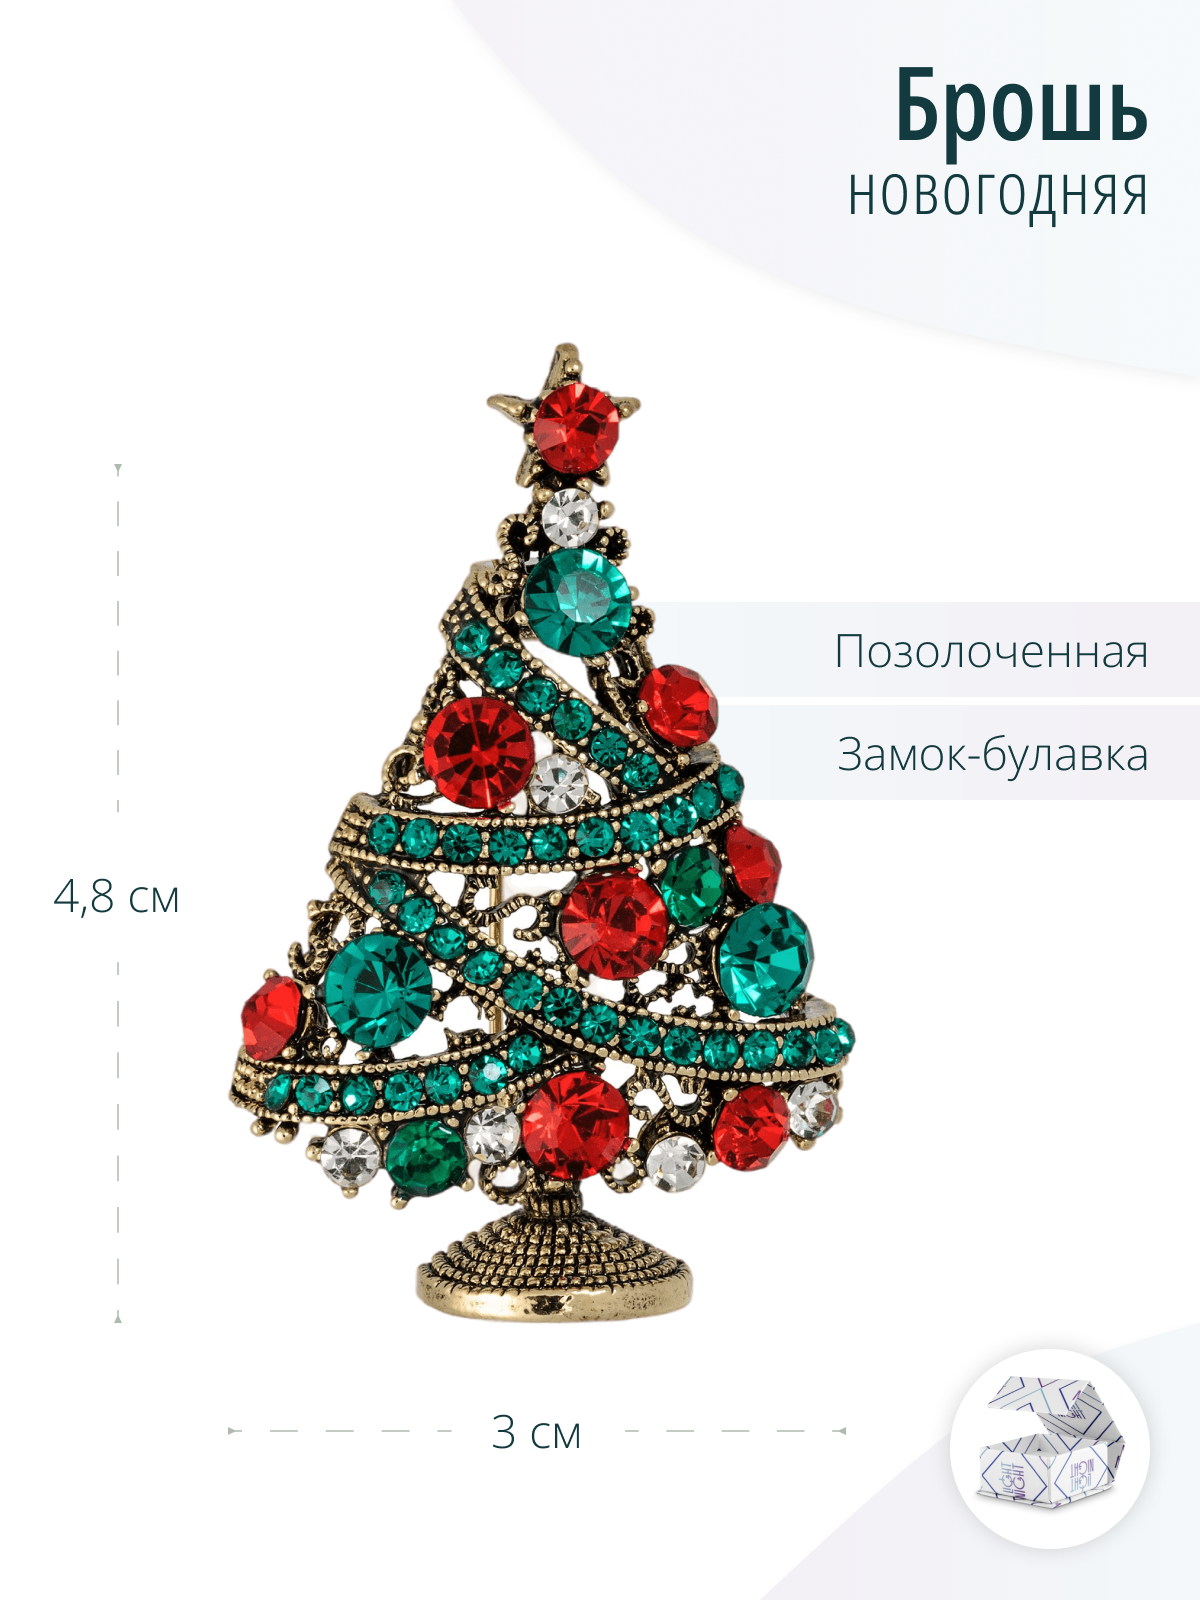 Новогодние броши - - купить в Украине на paraskevat.ru